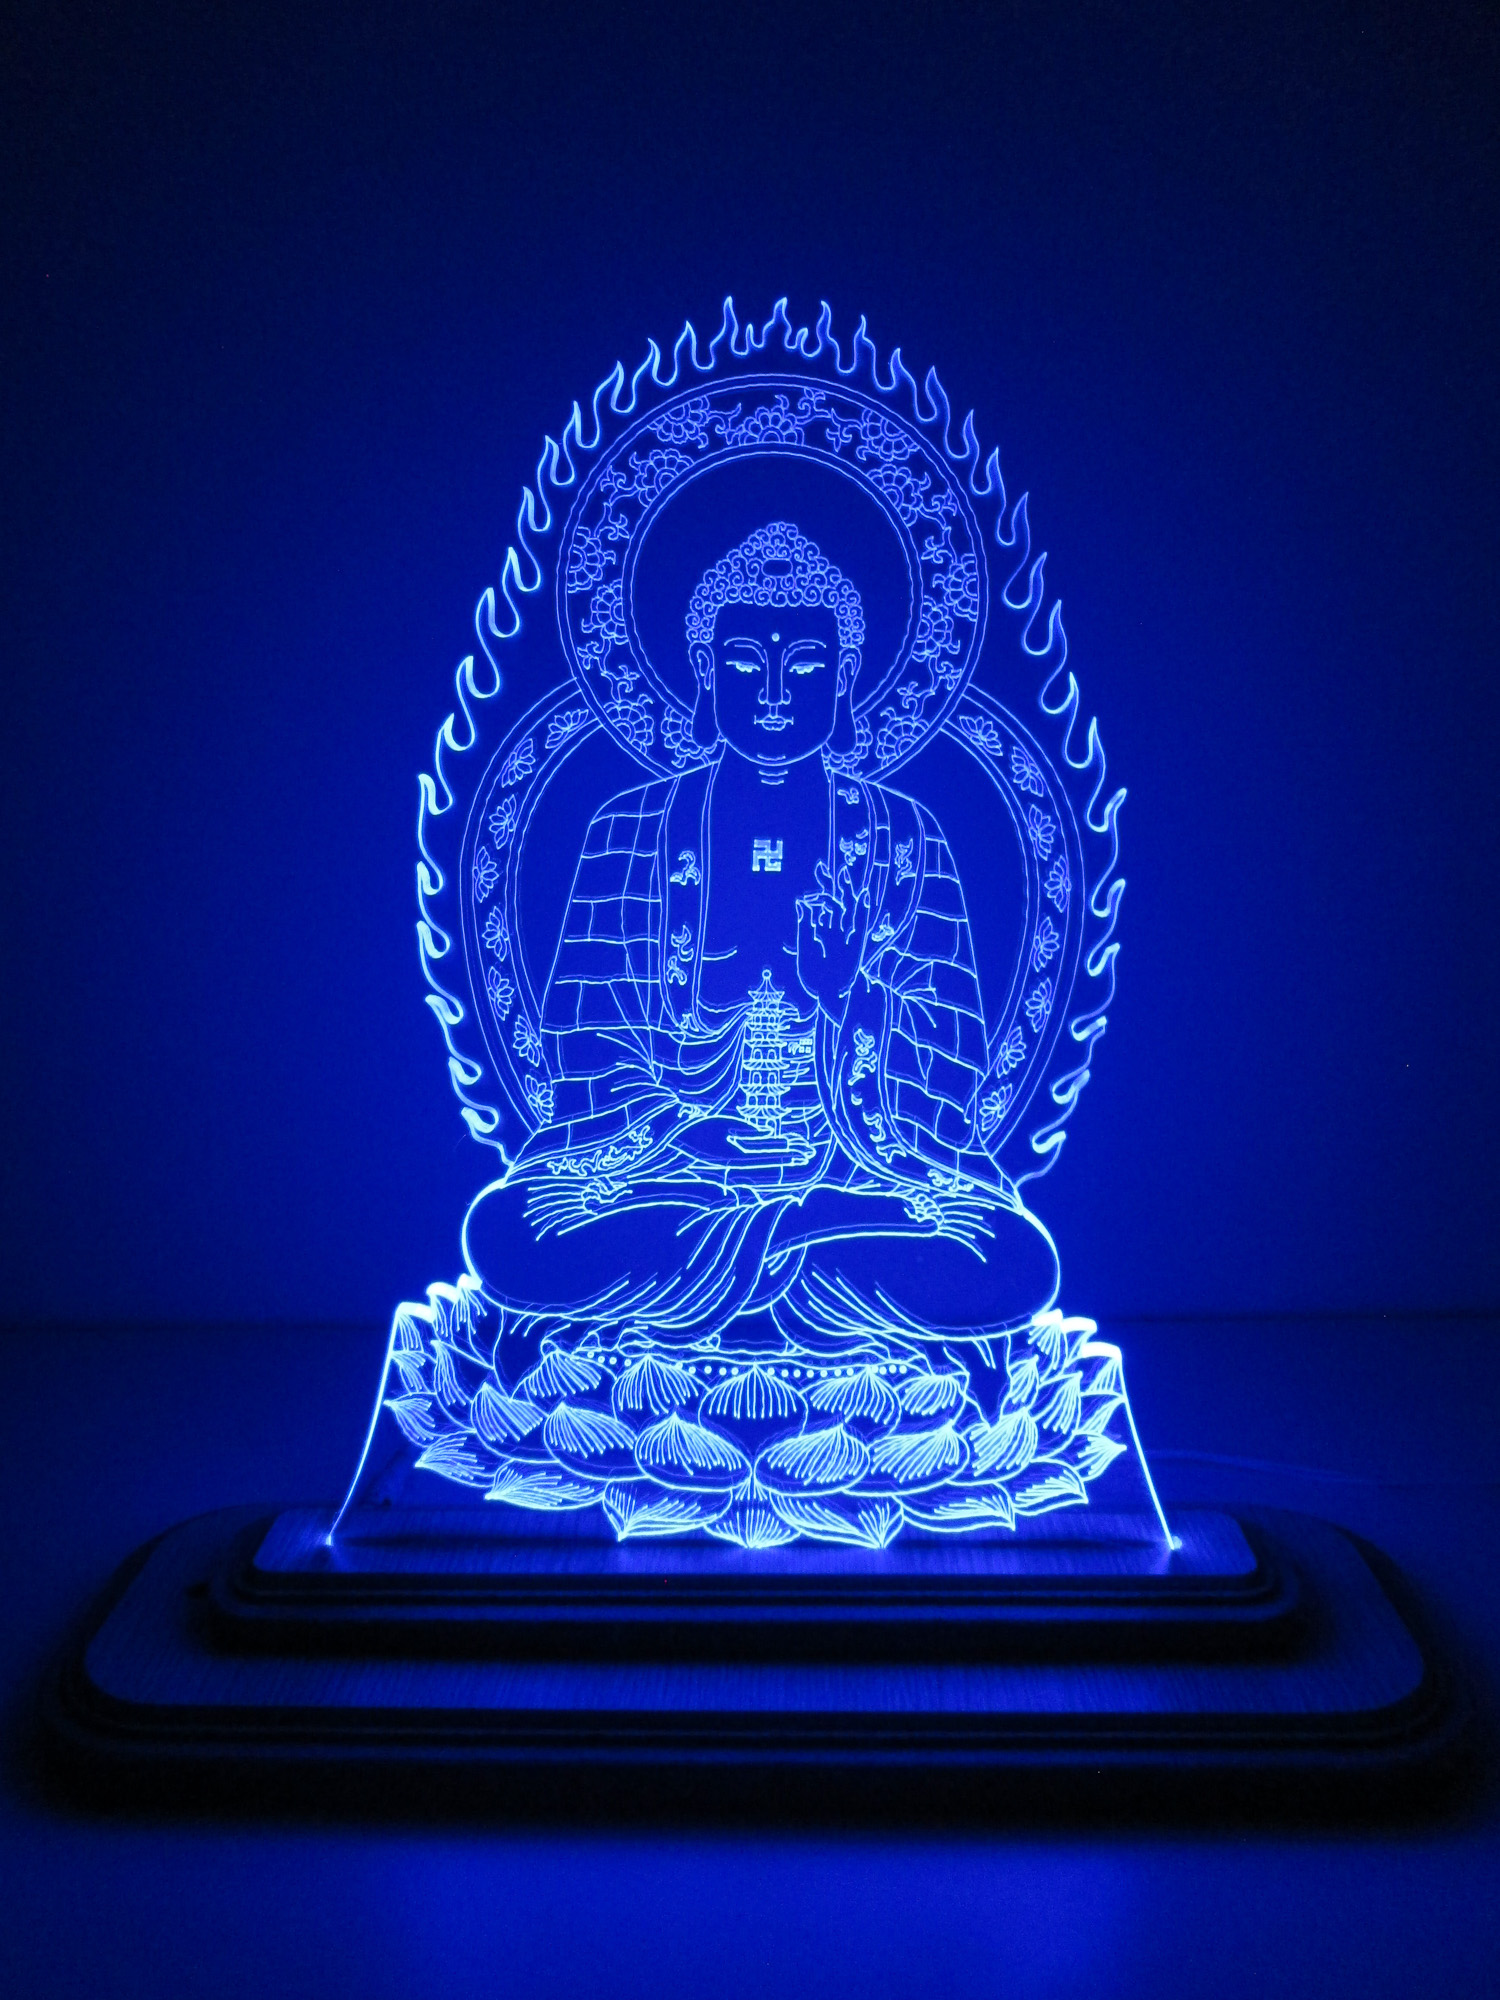 Mua Đèn Led 3D|Mô Hình Tượng Phật Dược Sư | Tiki